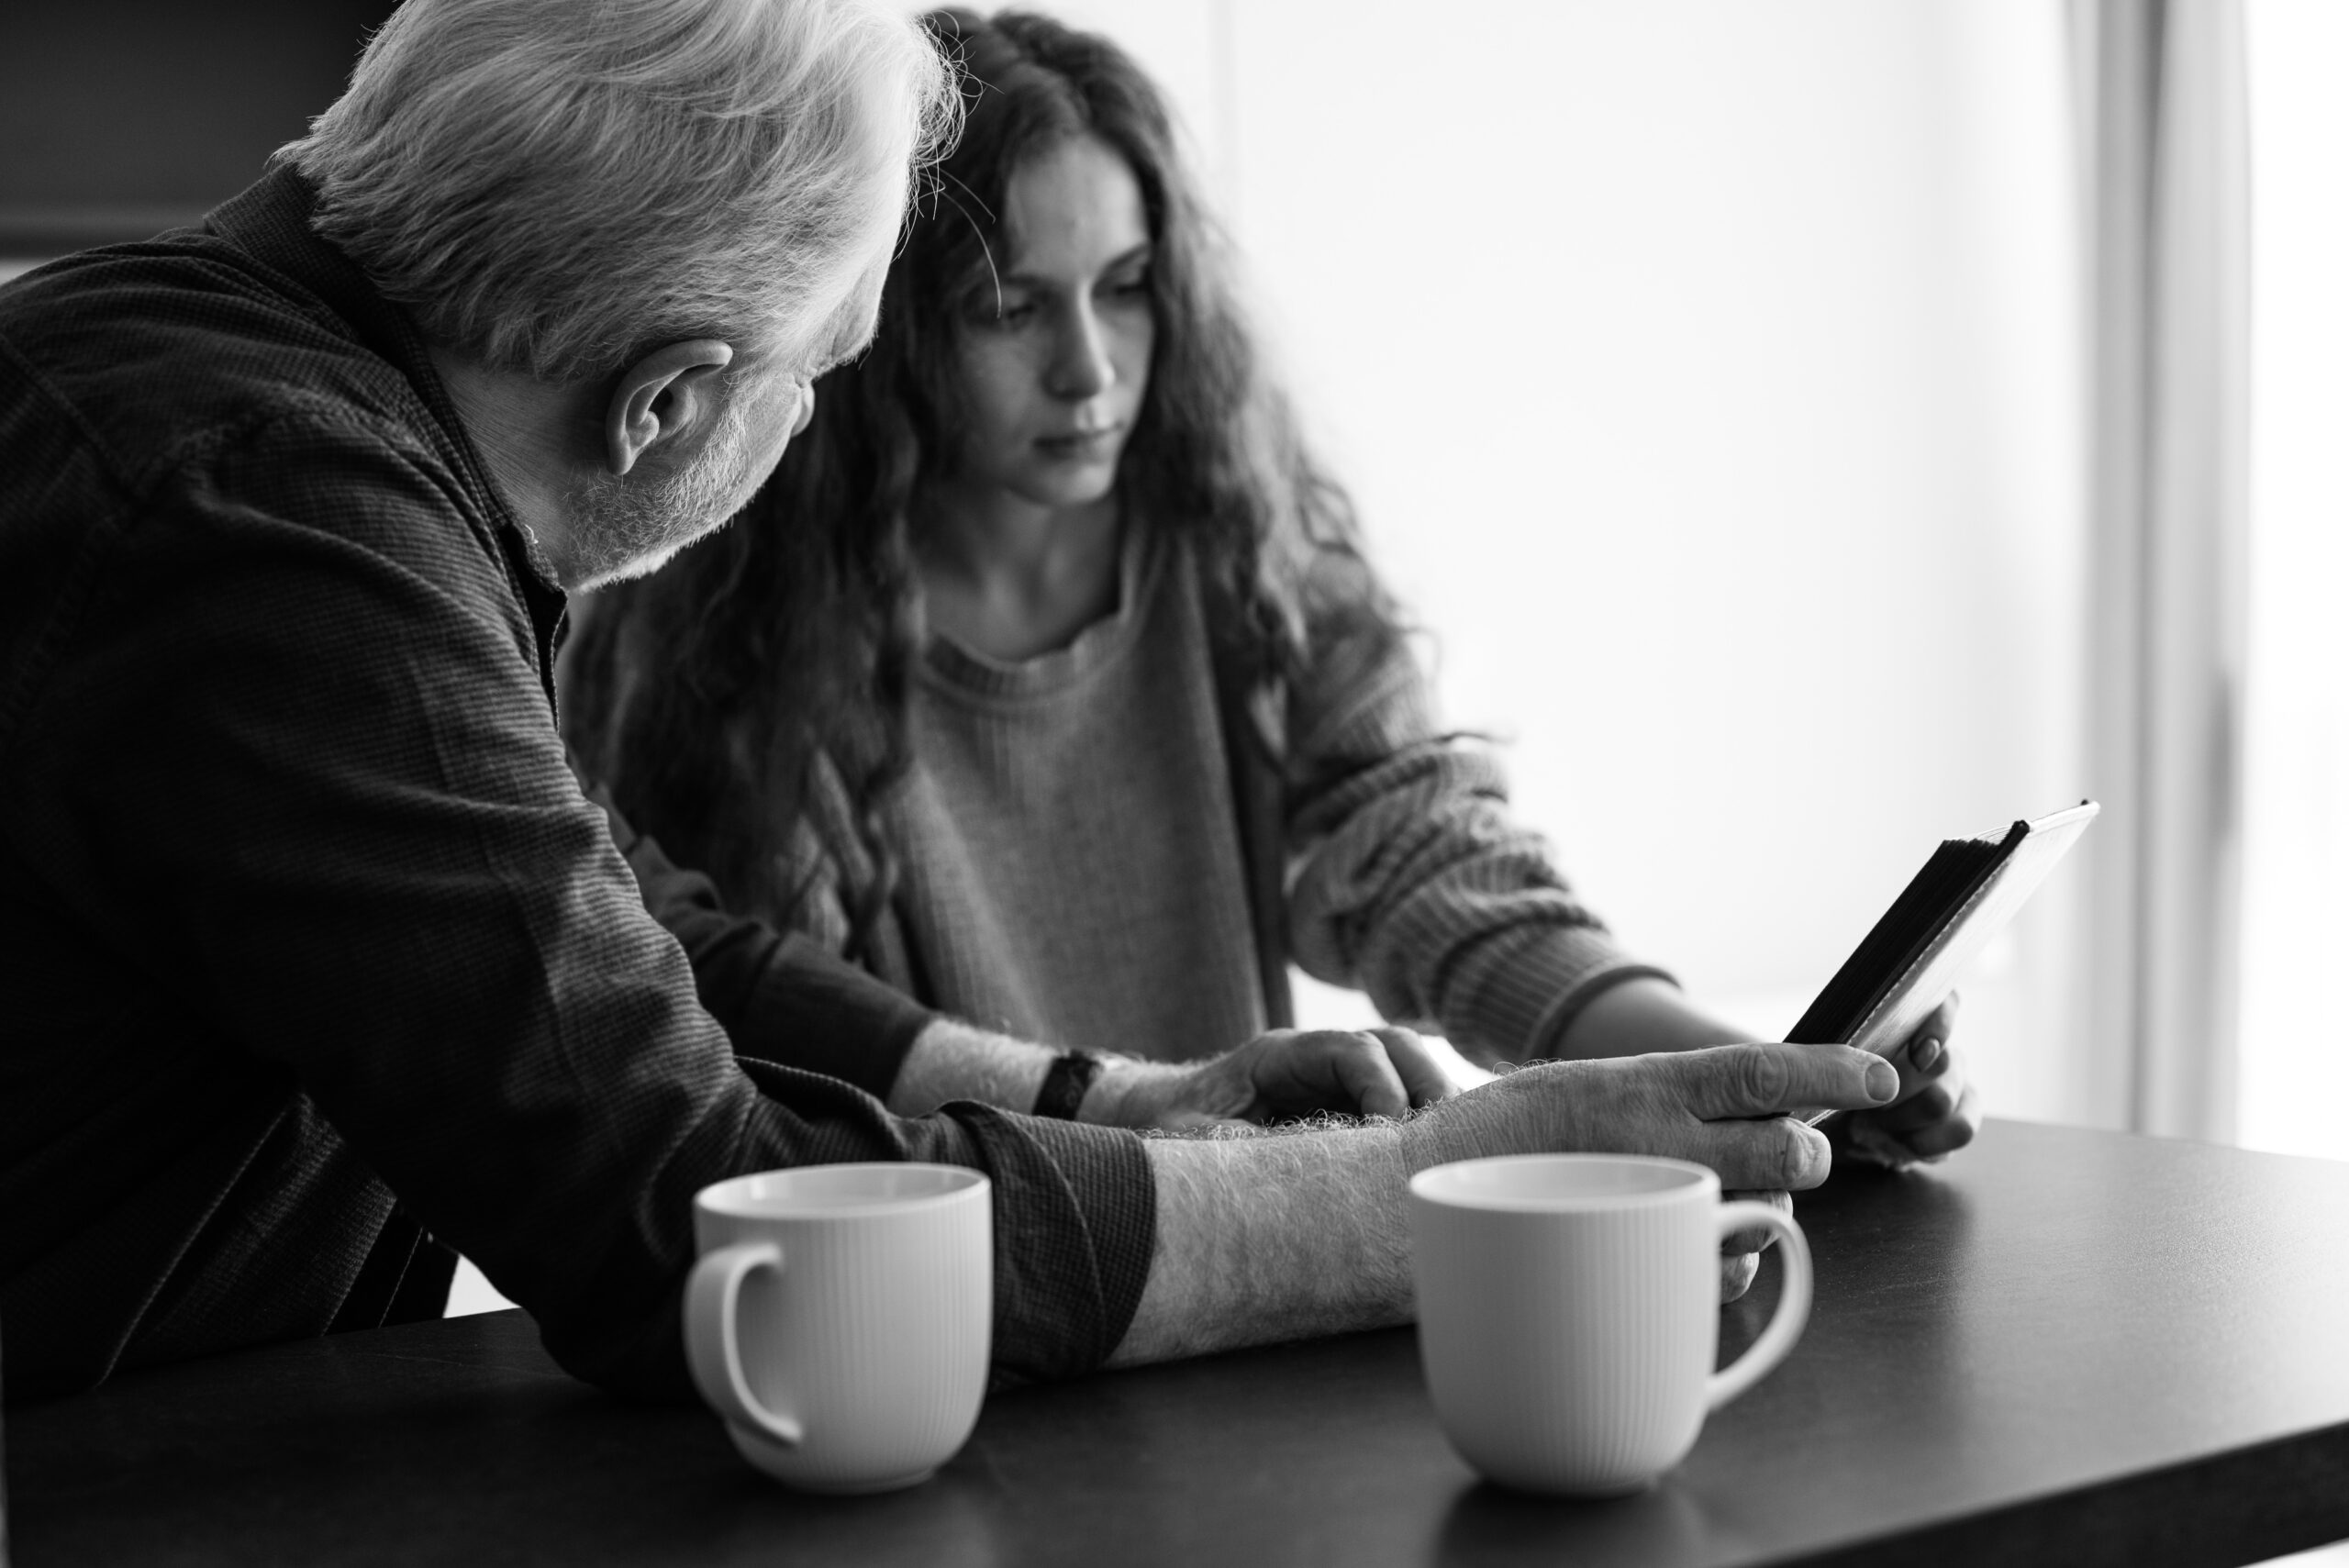 imagen a blanco y negro en la que una mujer le está mostrando algo a un señor mayor desde una tablet